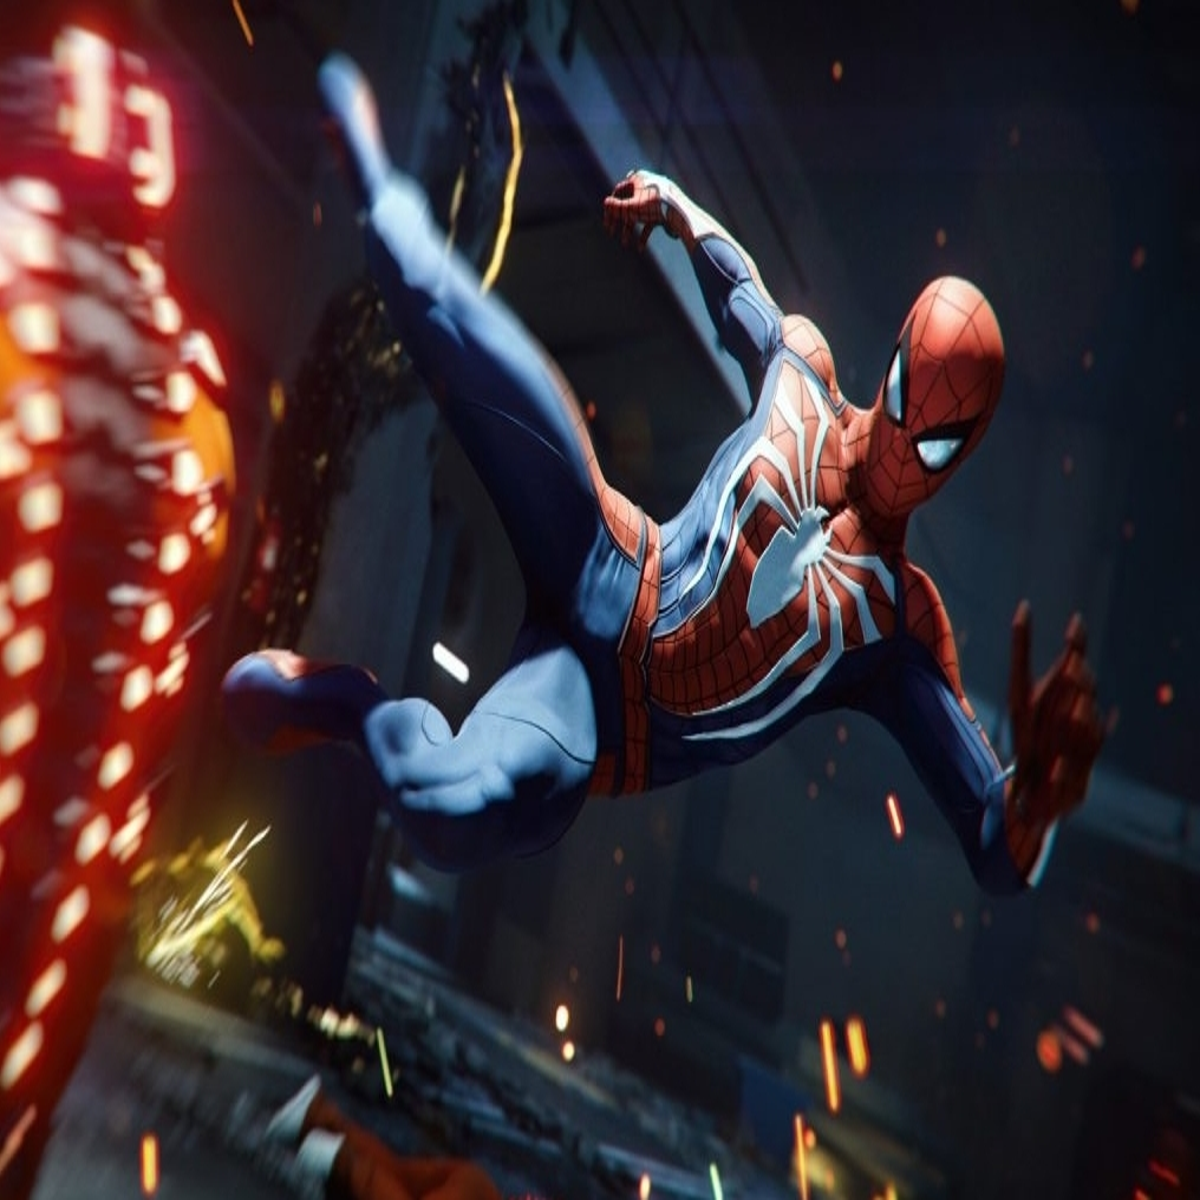 Como Transferir o Save do Spiderman de PS4 para o PS5 e Platinar o Game sem  precisar RE*JOGAR!!! 